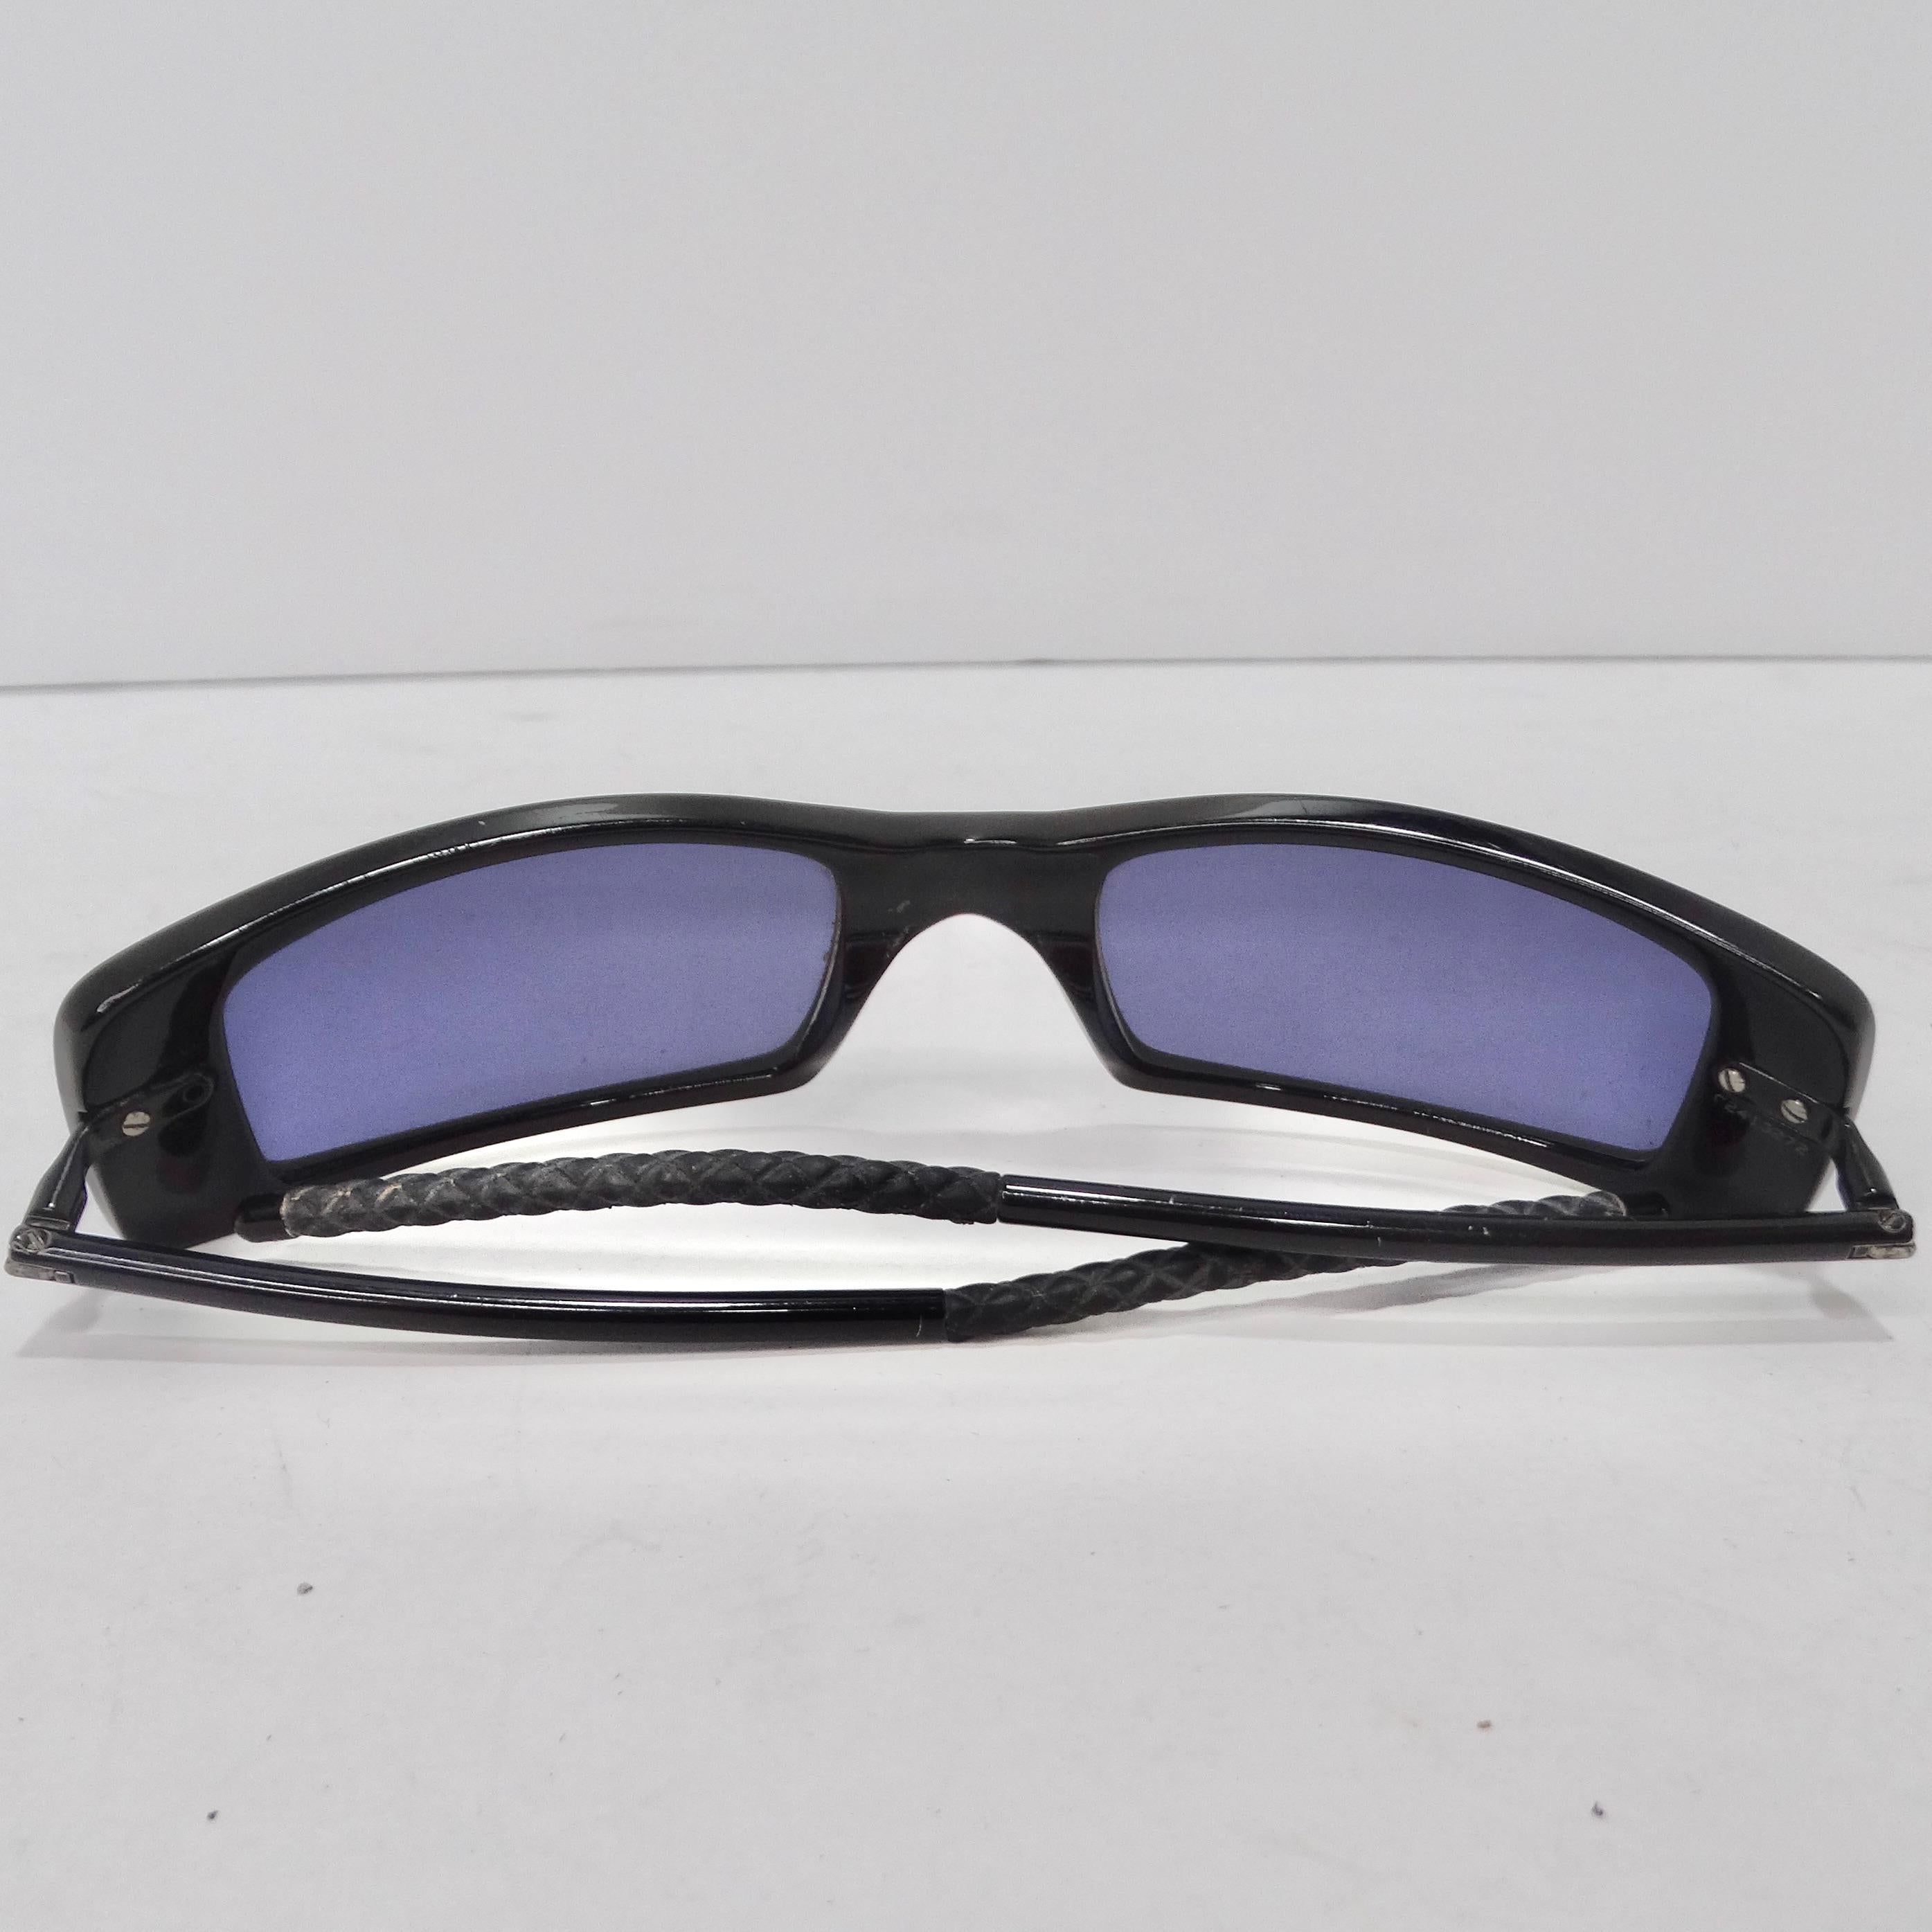 Die Chanel Black Y2K Square Frame Sunglasses ist eine klassische und vielseitige Ergänzung Ihrer Accessoire-Kollektion, die zeitlose Eleganz mit zeitgenössischem Stil verbindet. Diese Sonnenbrille ist mehr als nur ein Schutz für die Augen, sie ist